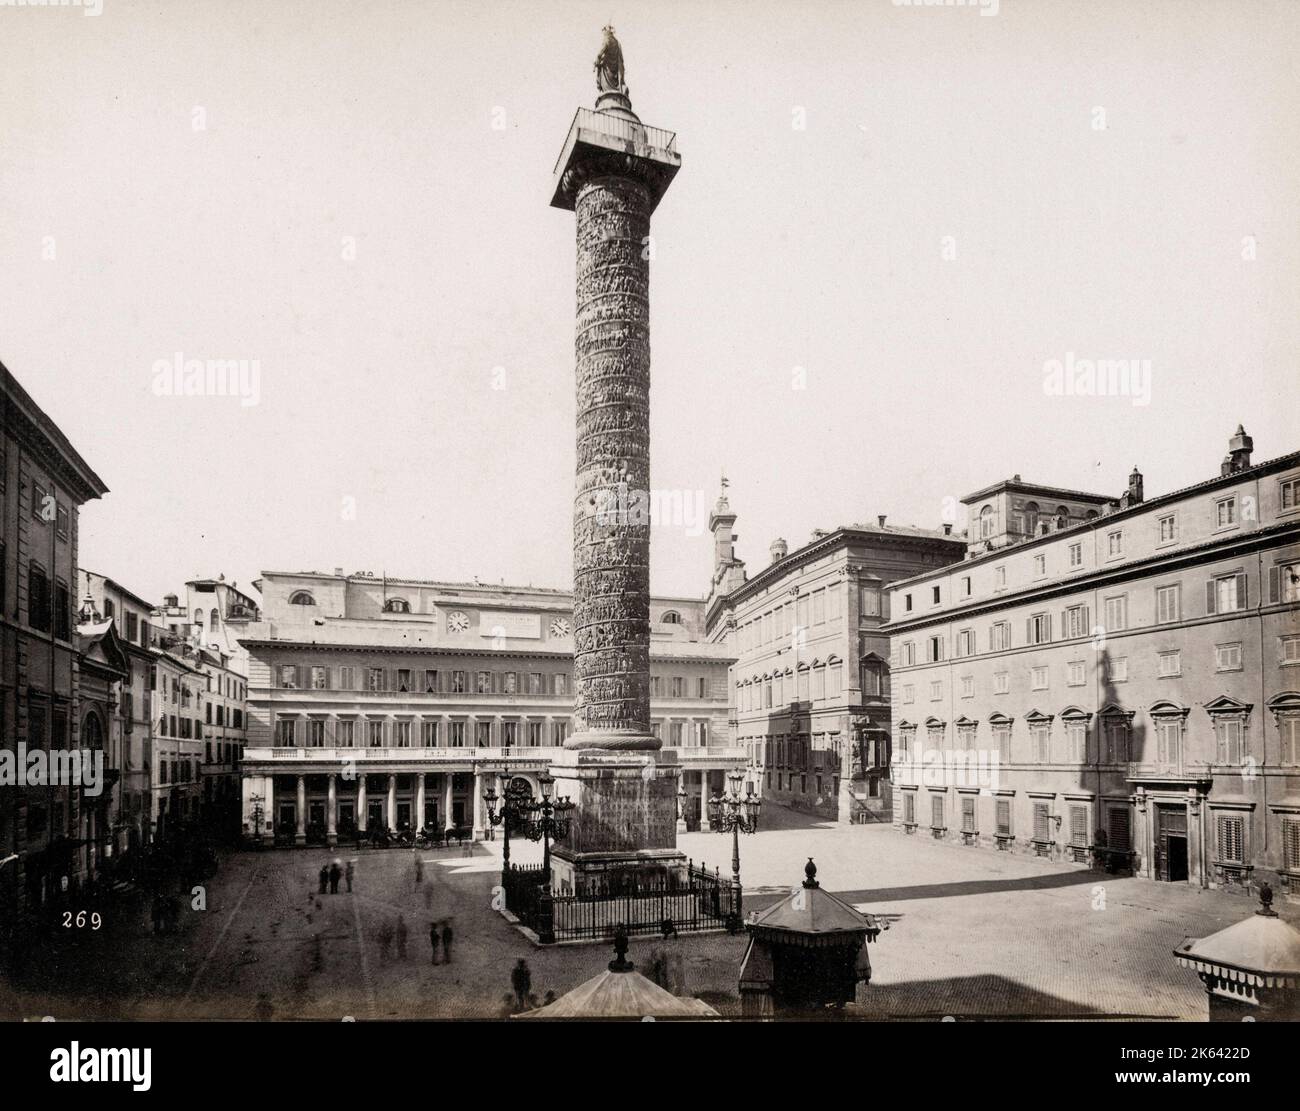 Fotografia d'epoca di fine Ottocento - la colonna di Marcus Aurelio è una colonna romana di vittoria in Piazza colonna, Roma, Italia Foto Stock